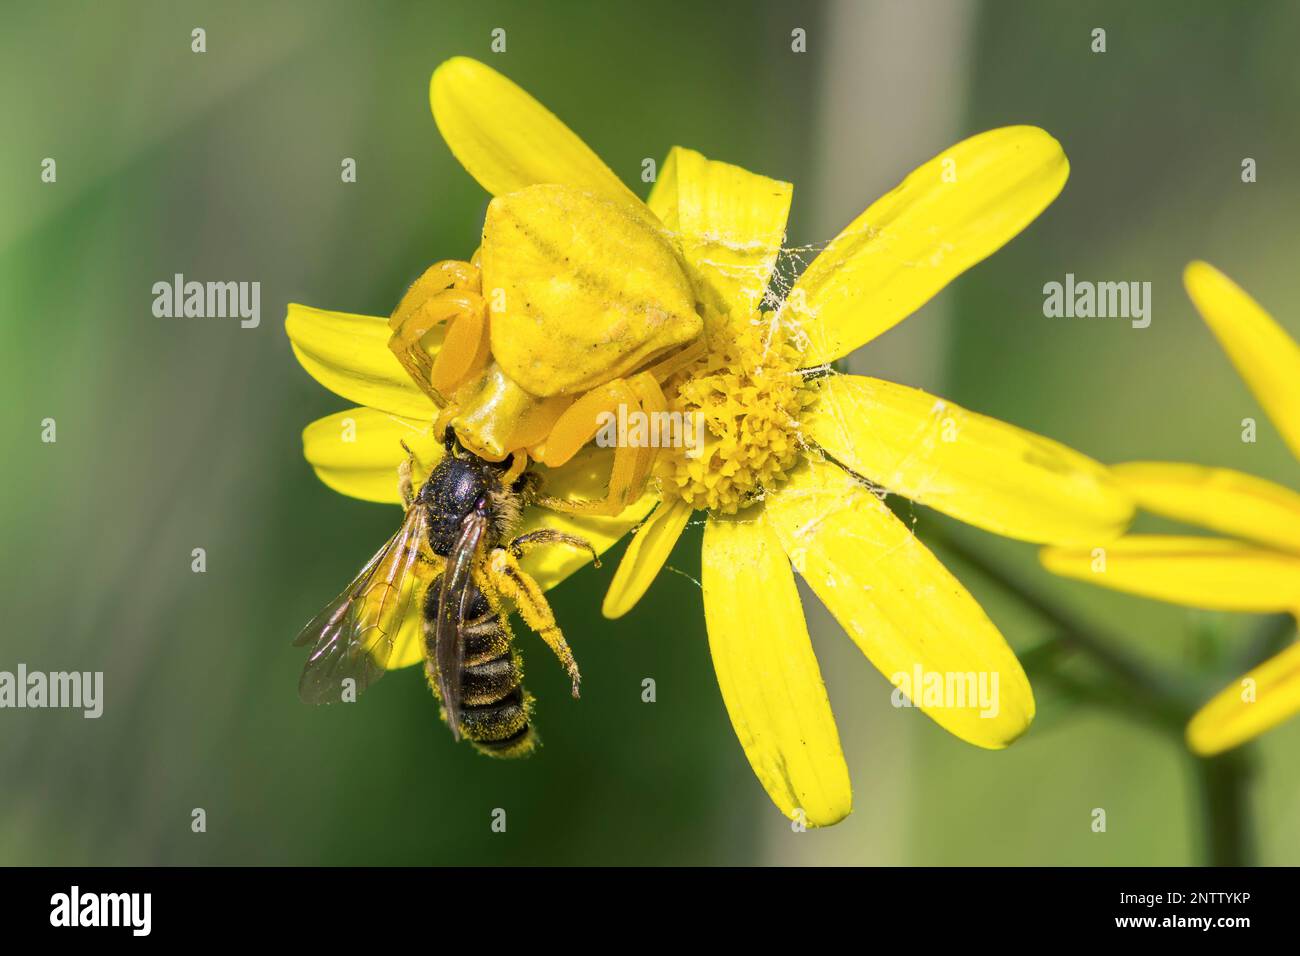 Araignée de crabe jaune, Thomisus Onustus, sur une fleur d'arachide jaune qui attrape une abeille occidentale, Apis mellifera Banque D'Images